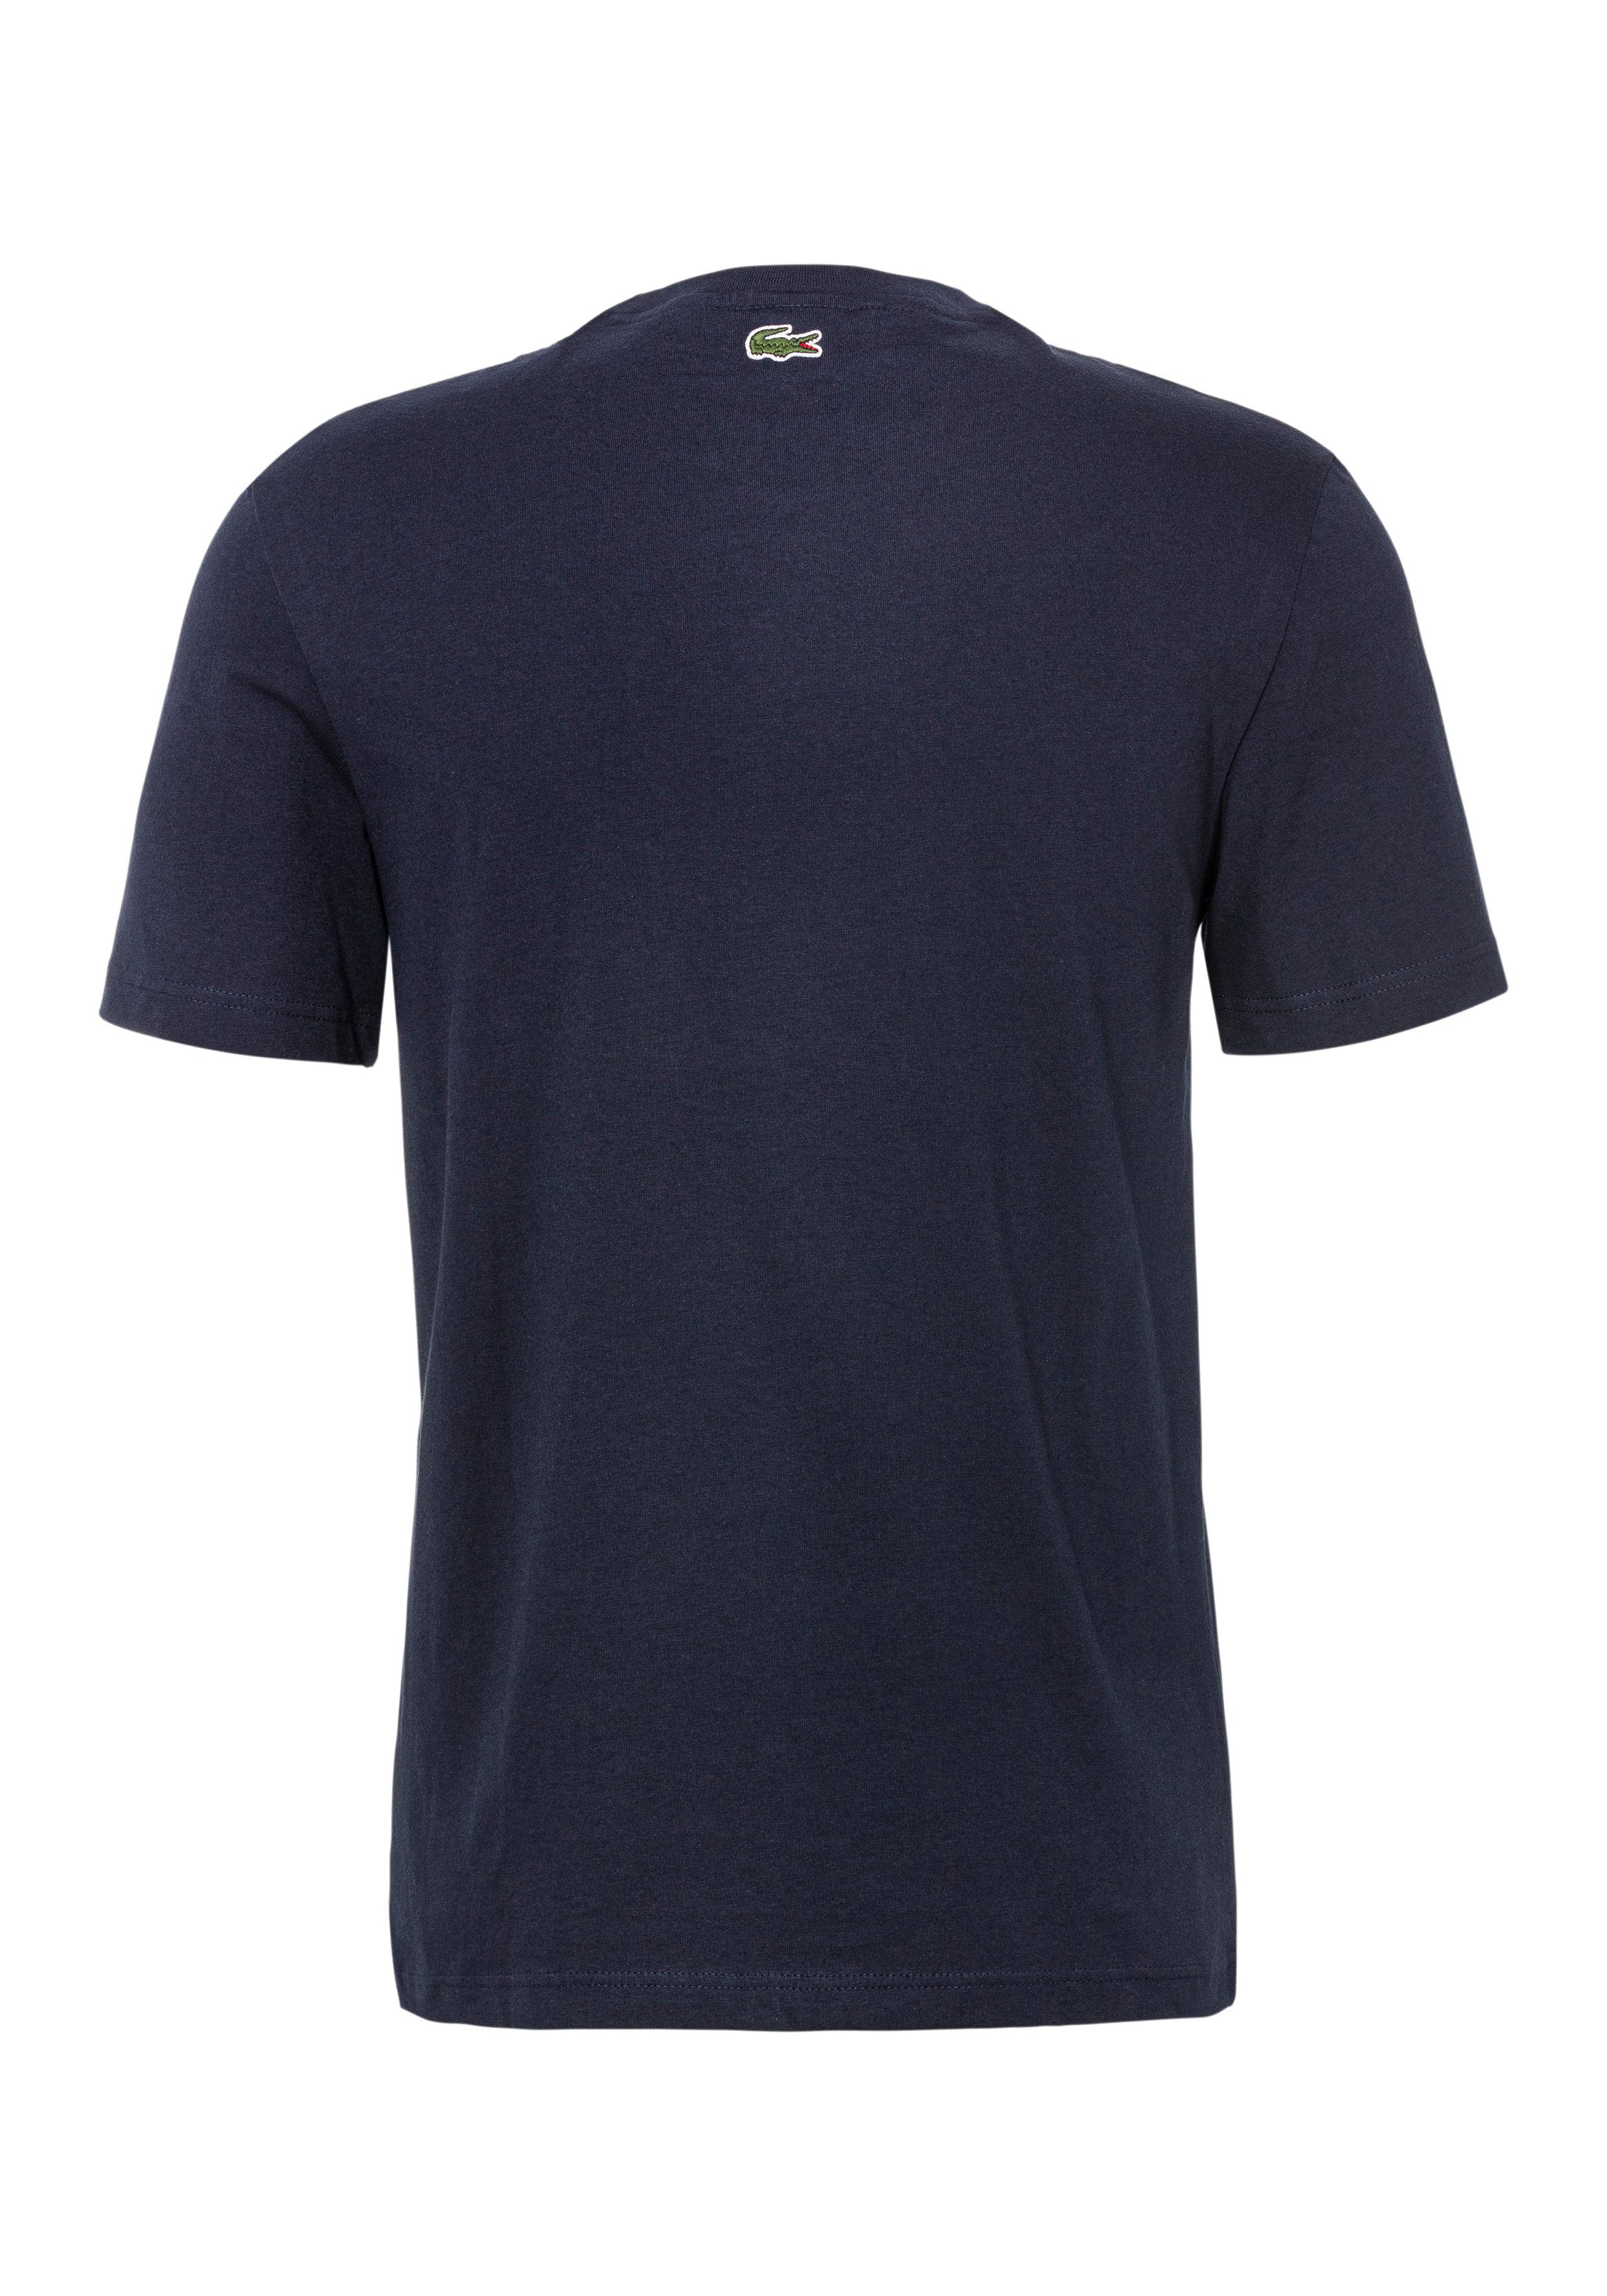 Lacoste Brust der NAVY BLUE Lacoste Print auf T-Shirt T-SHIRT mit